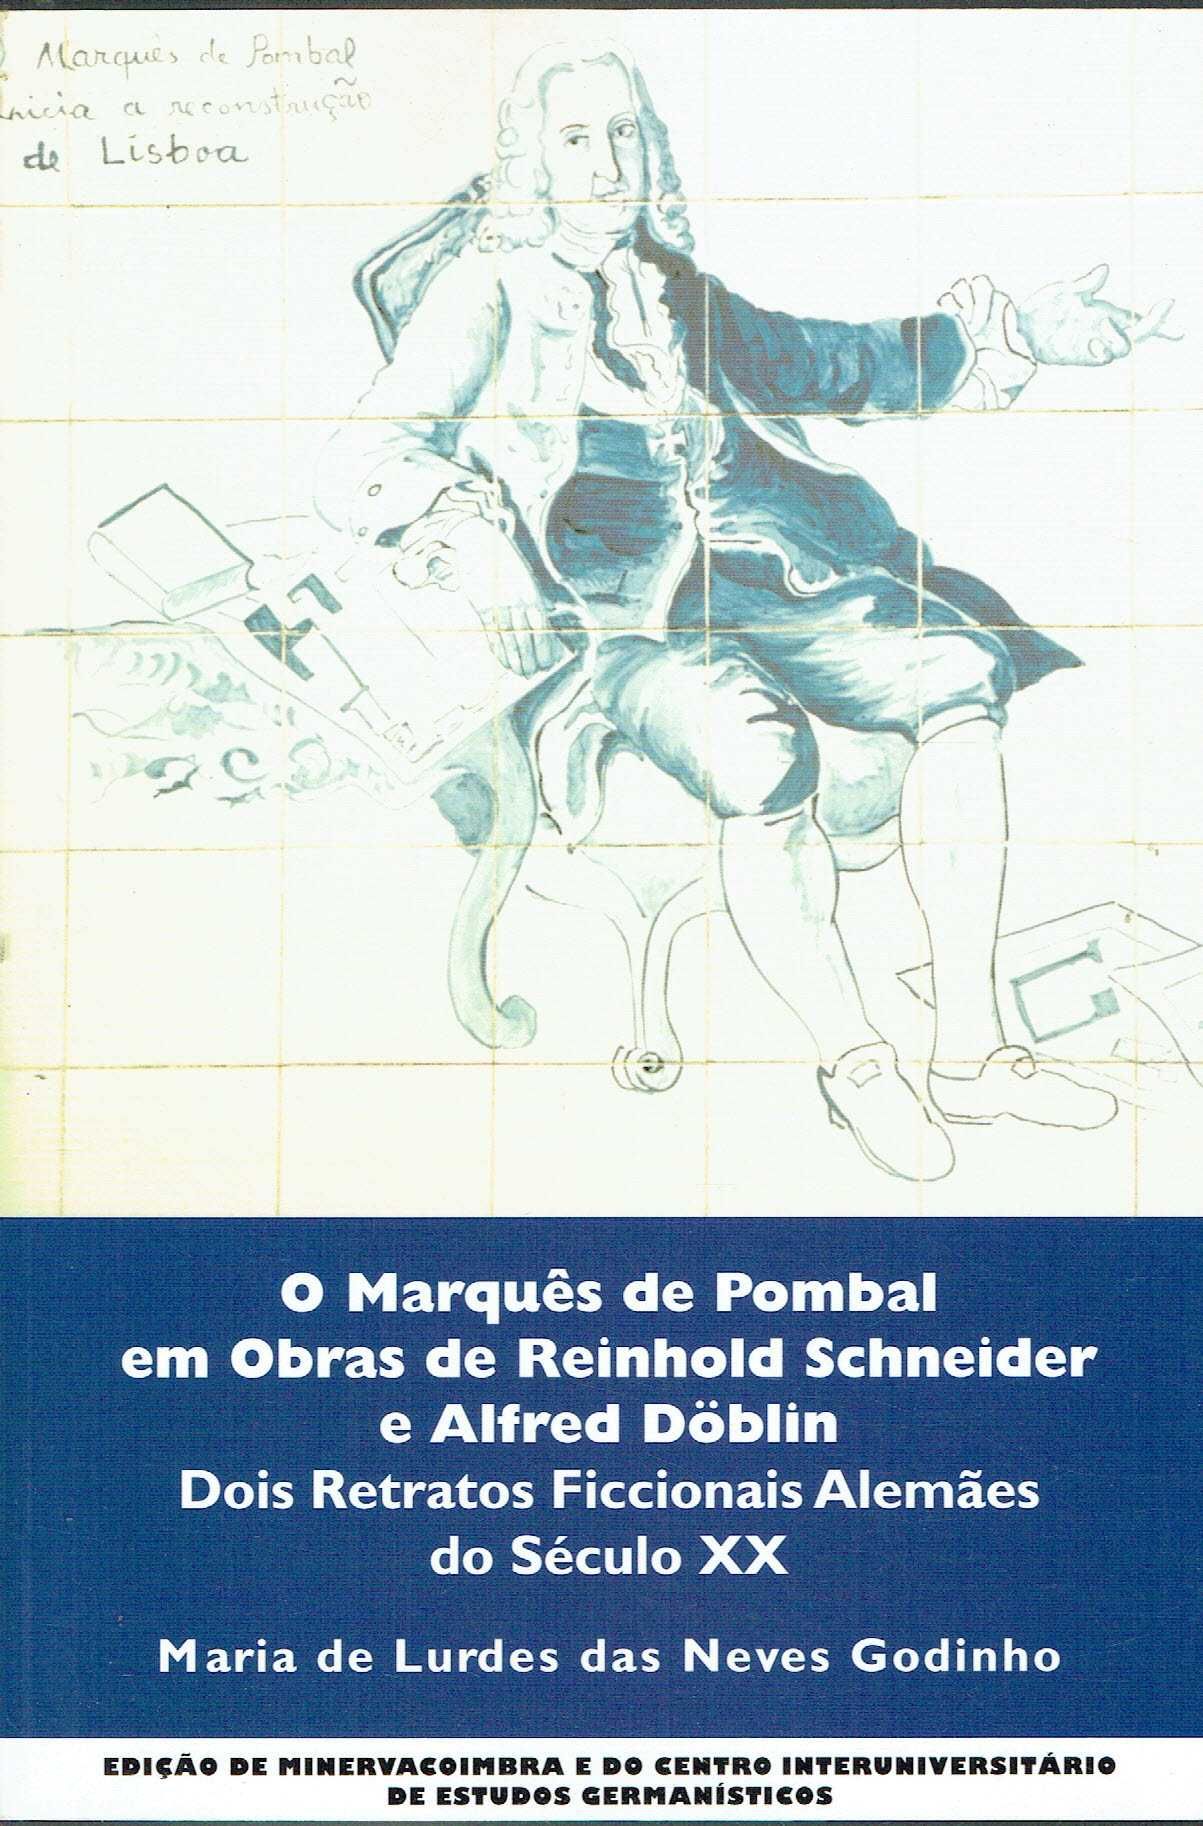 4736
O Marquês de Pombal em Obras de Reinhold Schneider e  Döblin